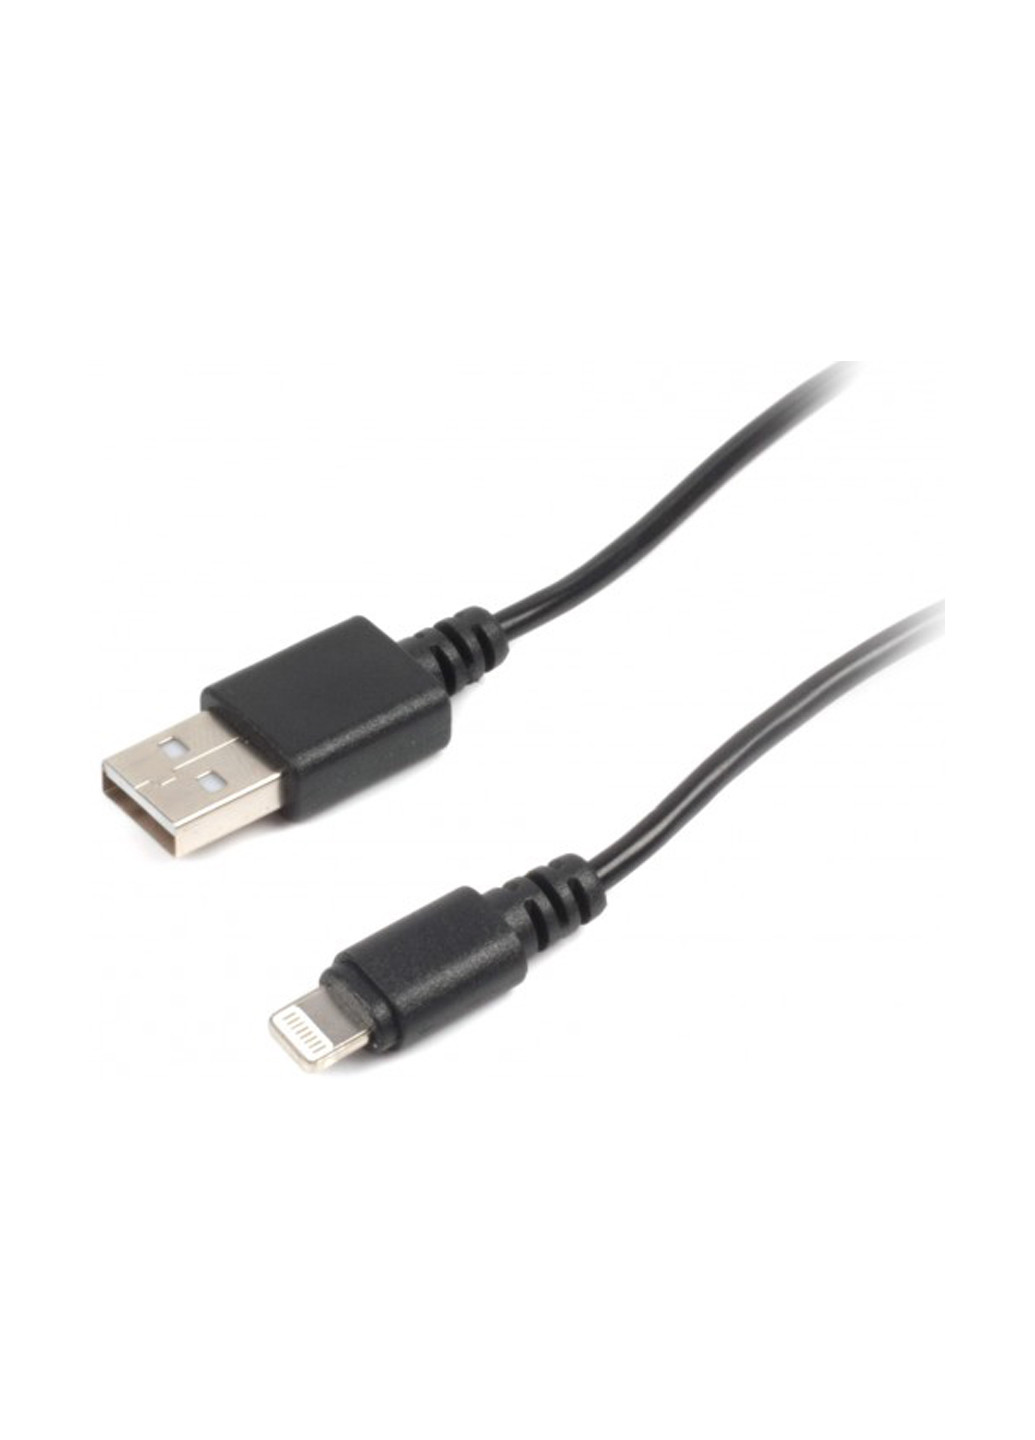 Кабель синхронізації USB 2.0 BM-тато / Lightning, 1.0 м (CC-USB 2-AMLM-1M) Cablexpert usb 2.0 bm-папа/lightning, 1.0 м (cc-usb 2-amlm-1m) (137550365)